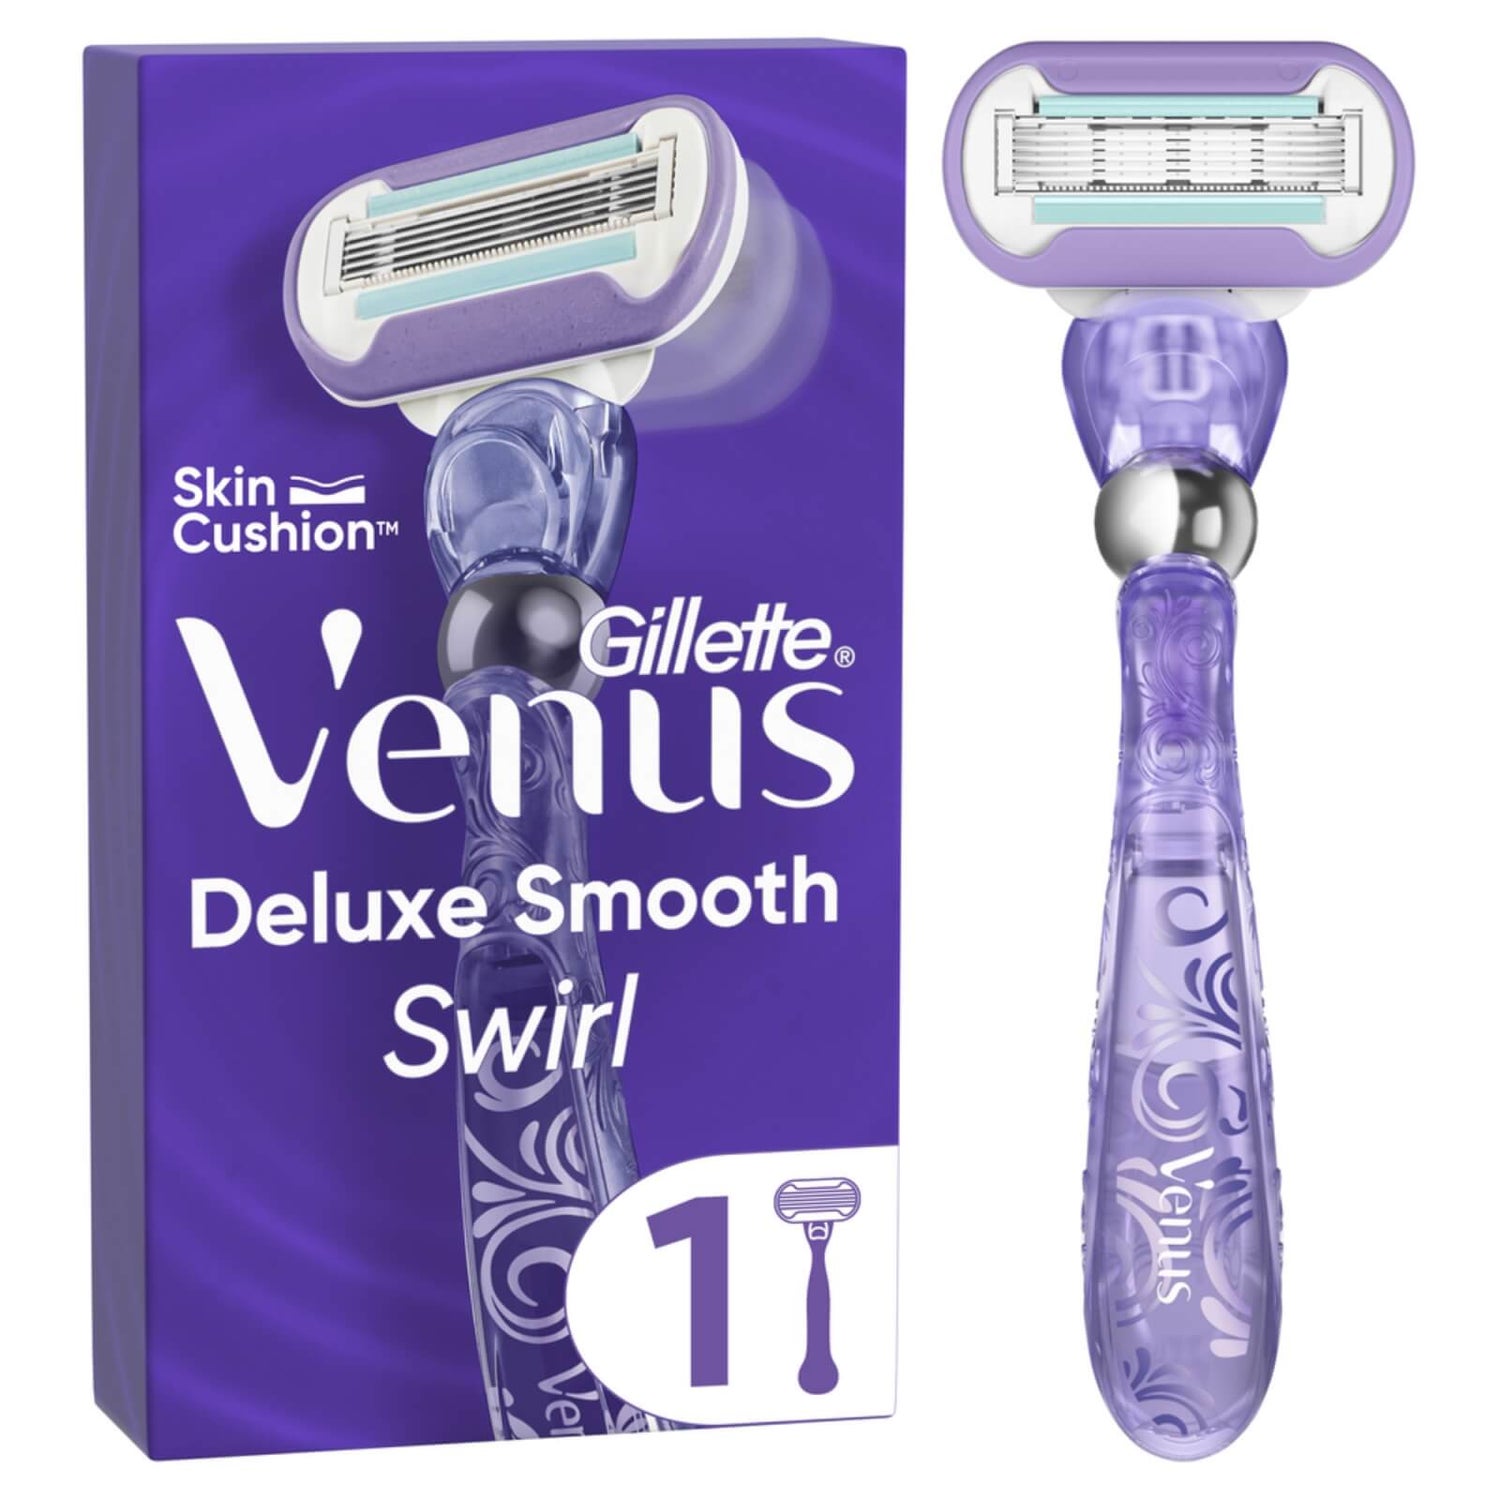 Venus Deluxe Станок для бритья с гладкой эргономичной ручкой